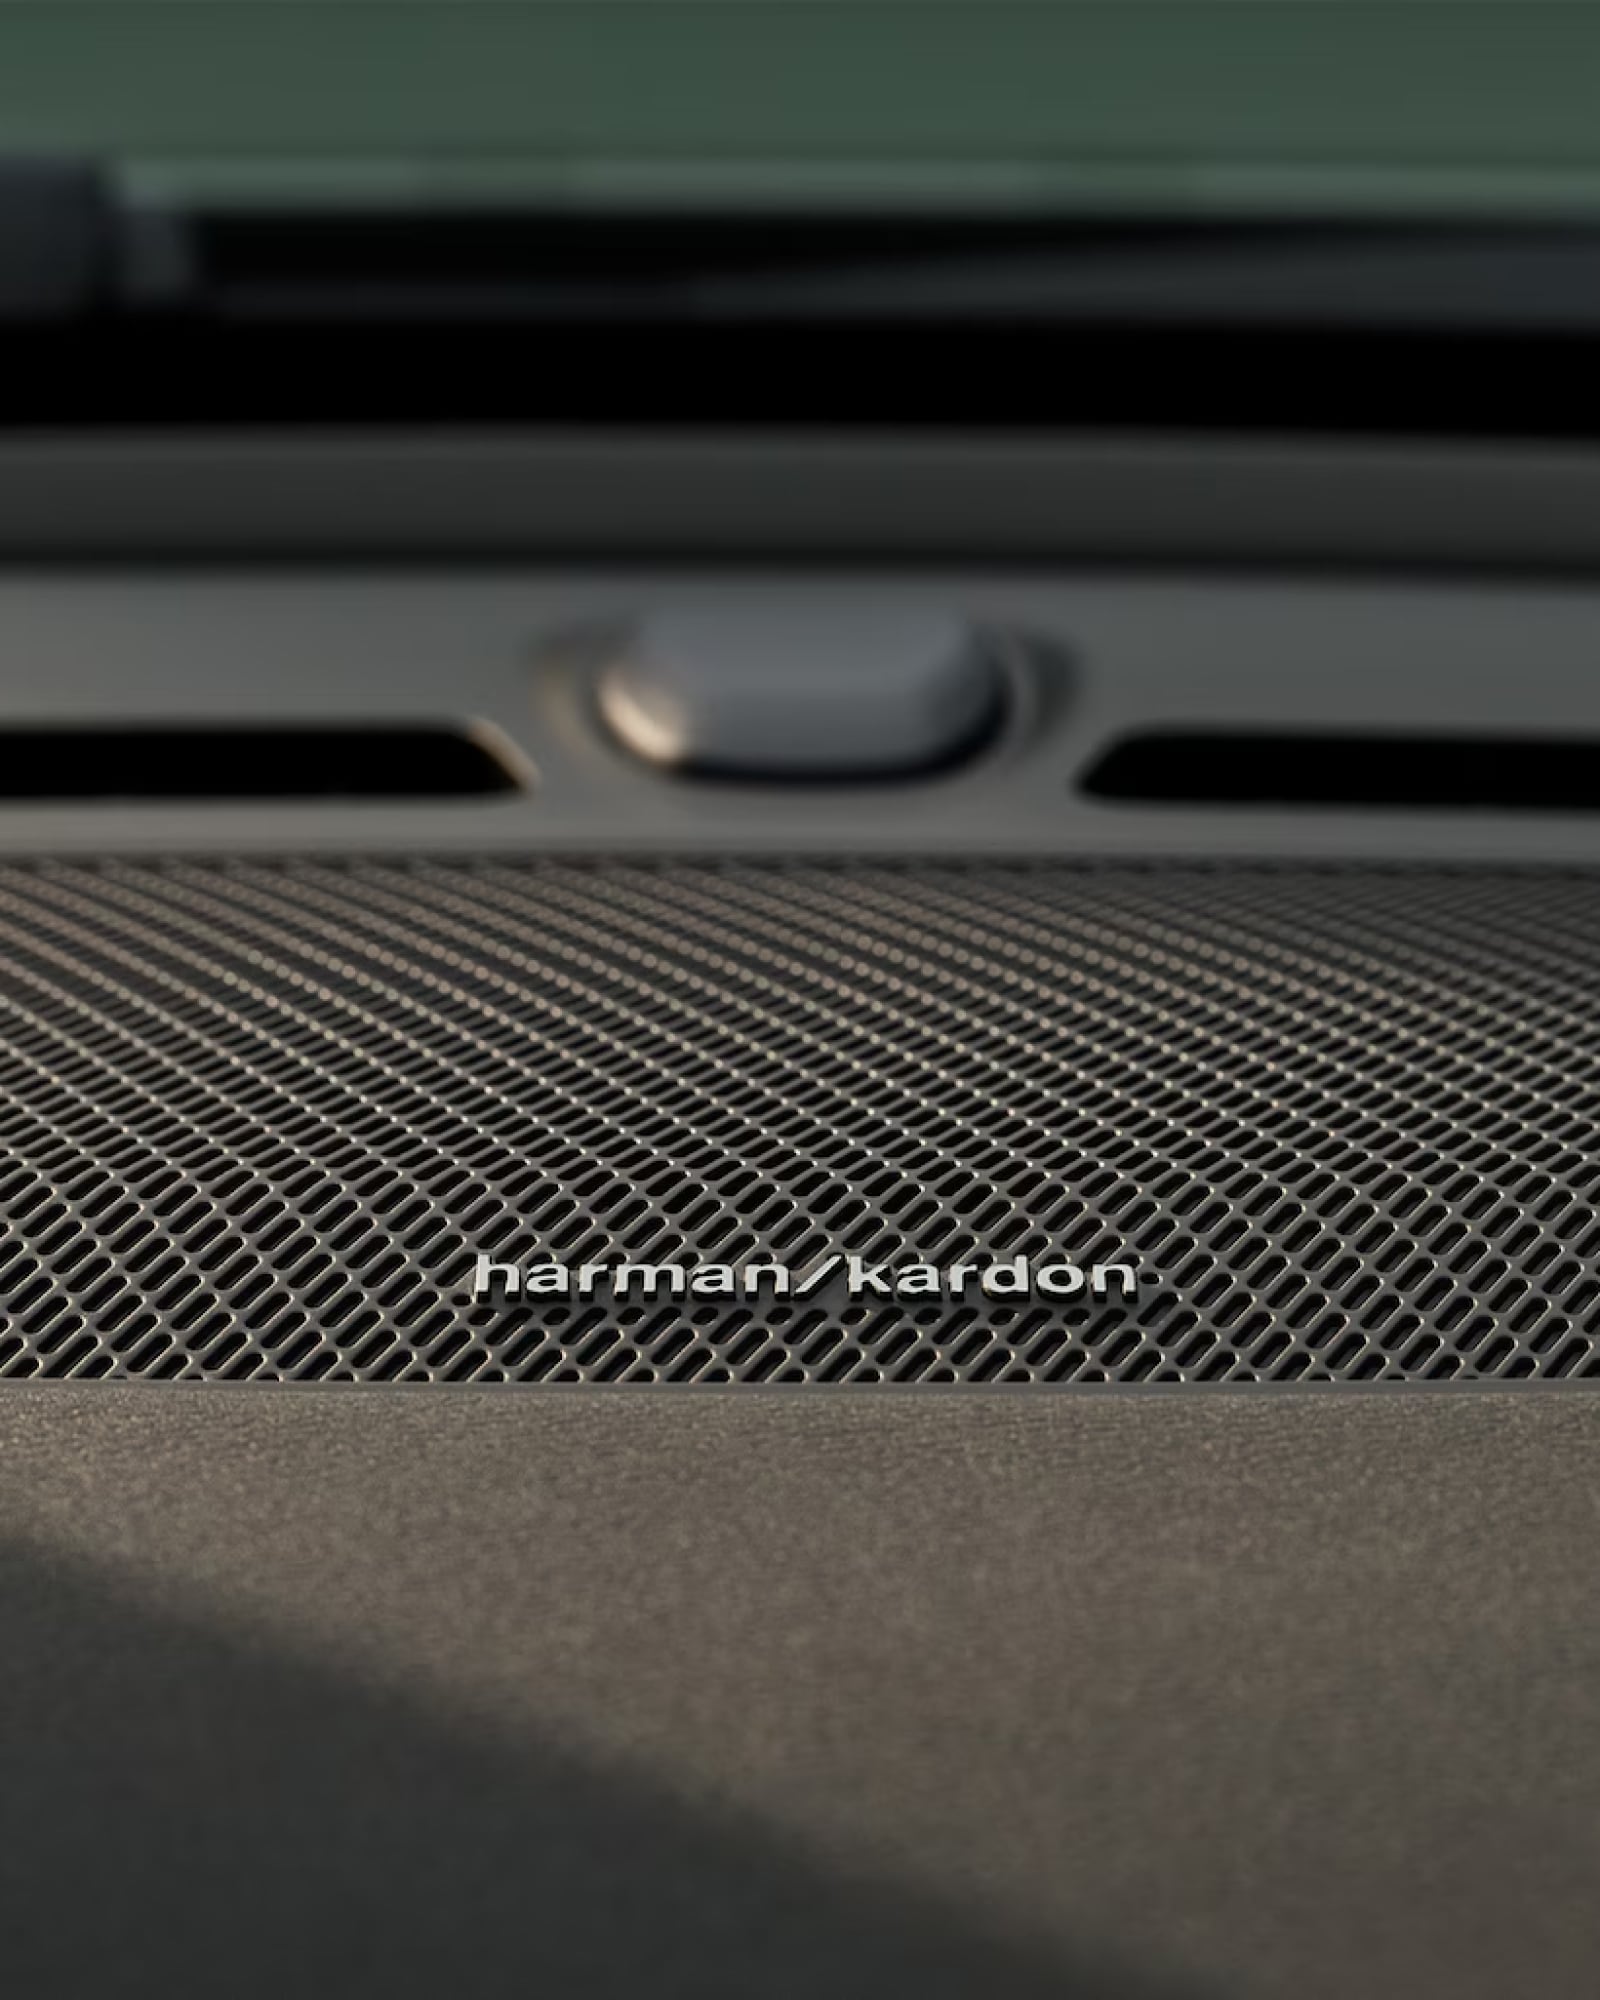 Detaljbild av Harman Kardon-högtalare i dörren på Volvo XC40.